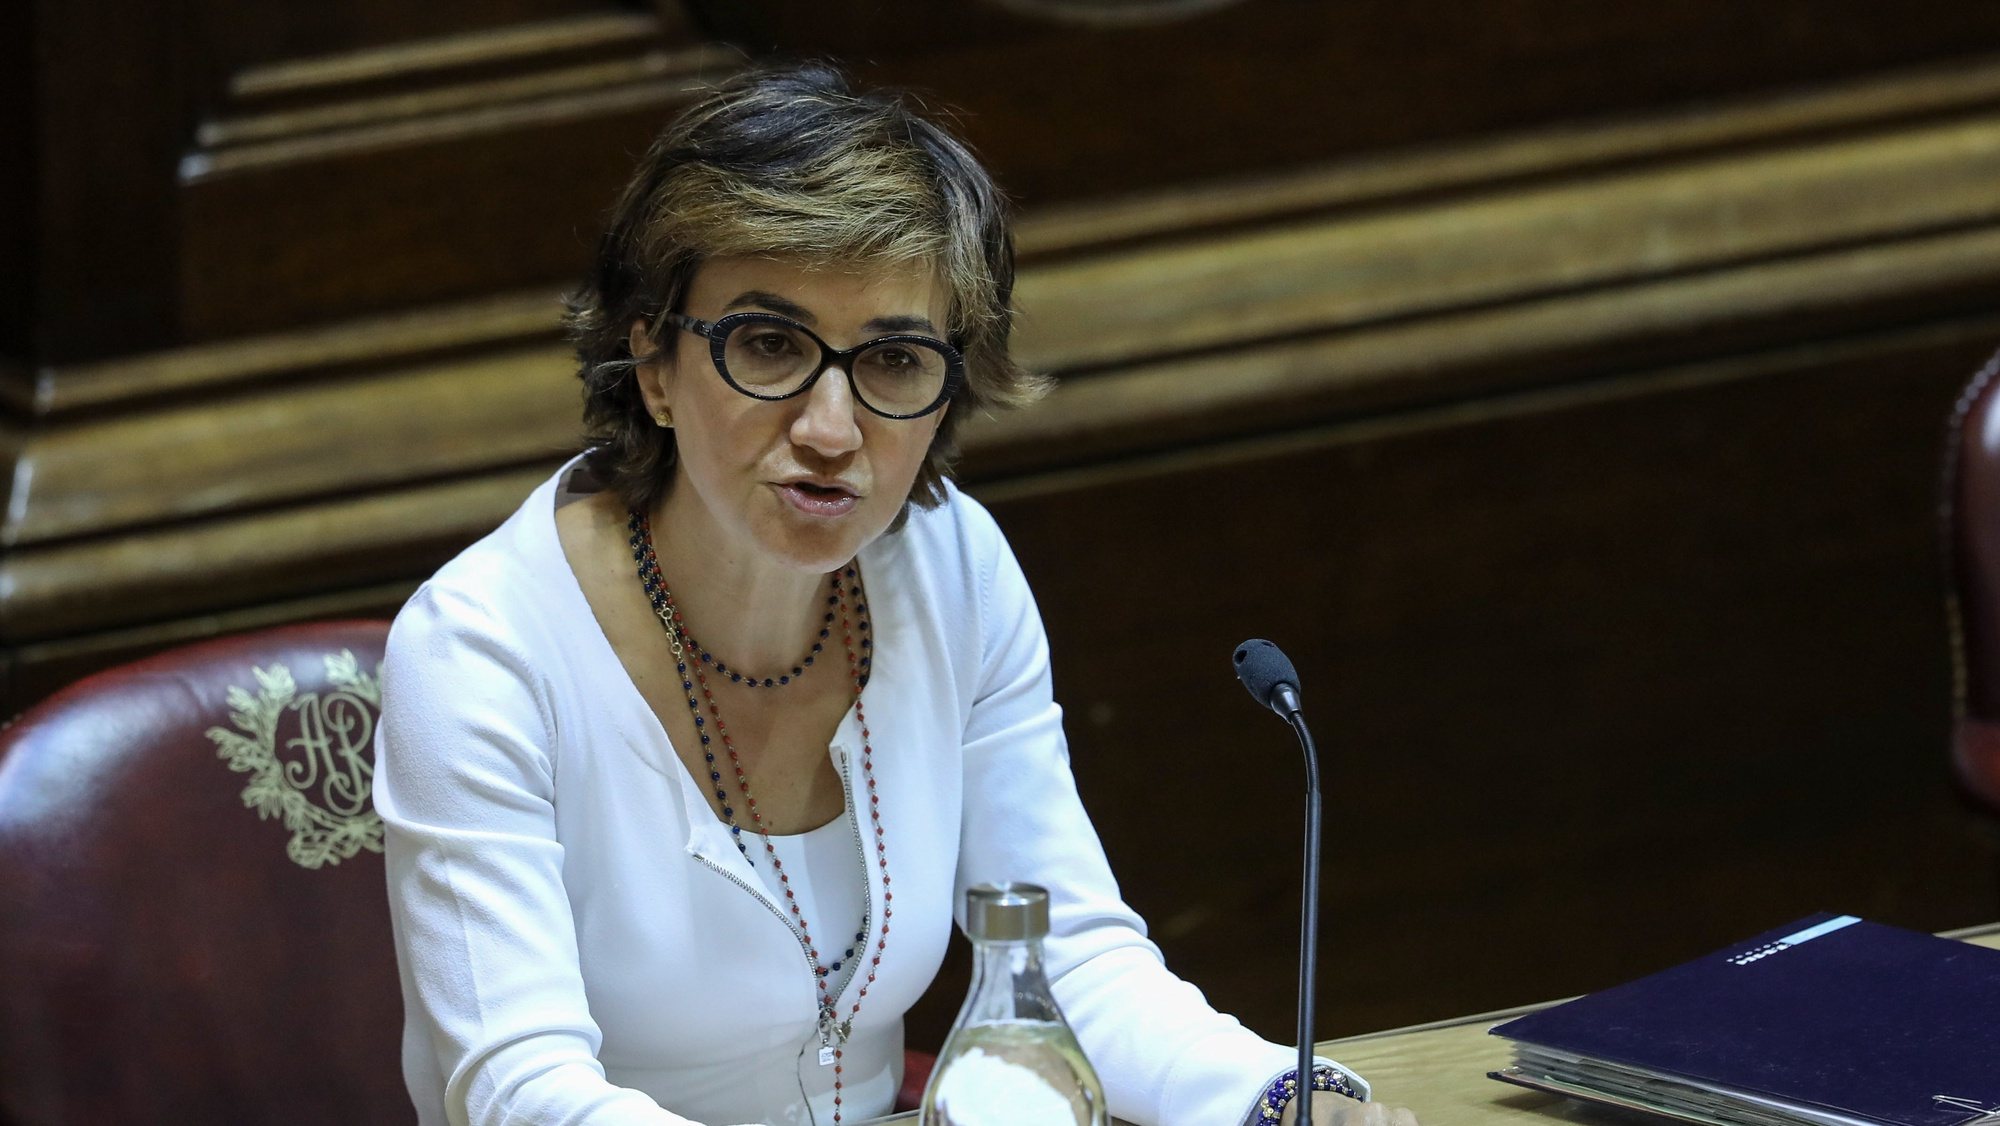 Ministra da Agricultura Maria do Céu Antunes ouvida na Comissão de Agricultura e Mar esta tarde na Assembleia da República em Lisboa, 7 de julho de 2021. MIGUEL A. LOPES/LUSA